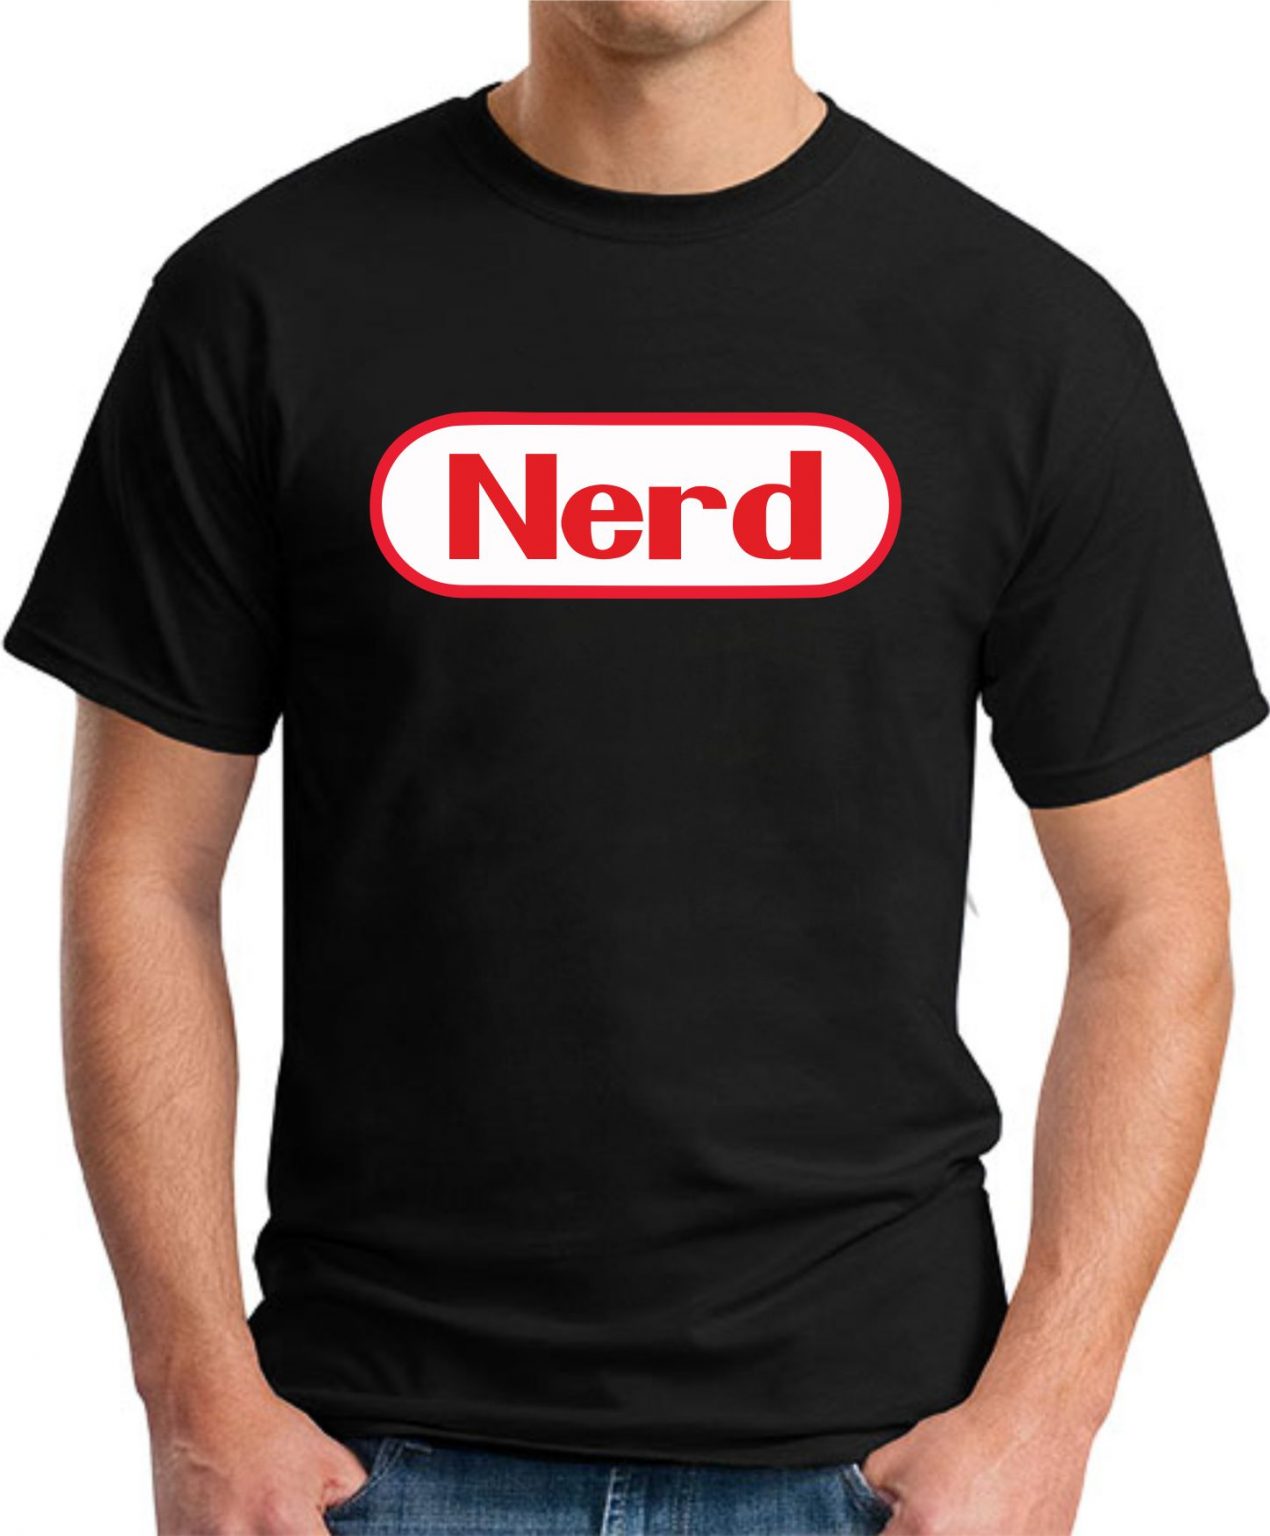 NERD T-SHIRT - GeekyTees